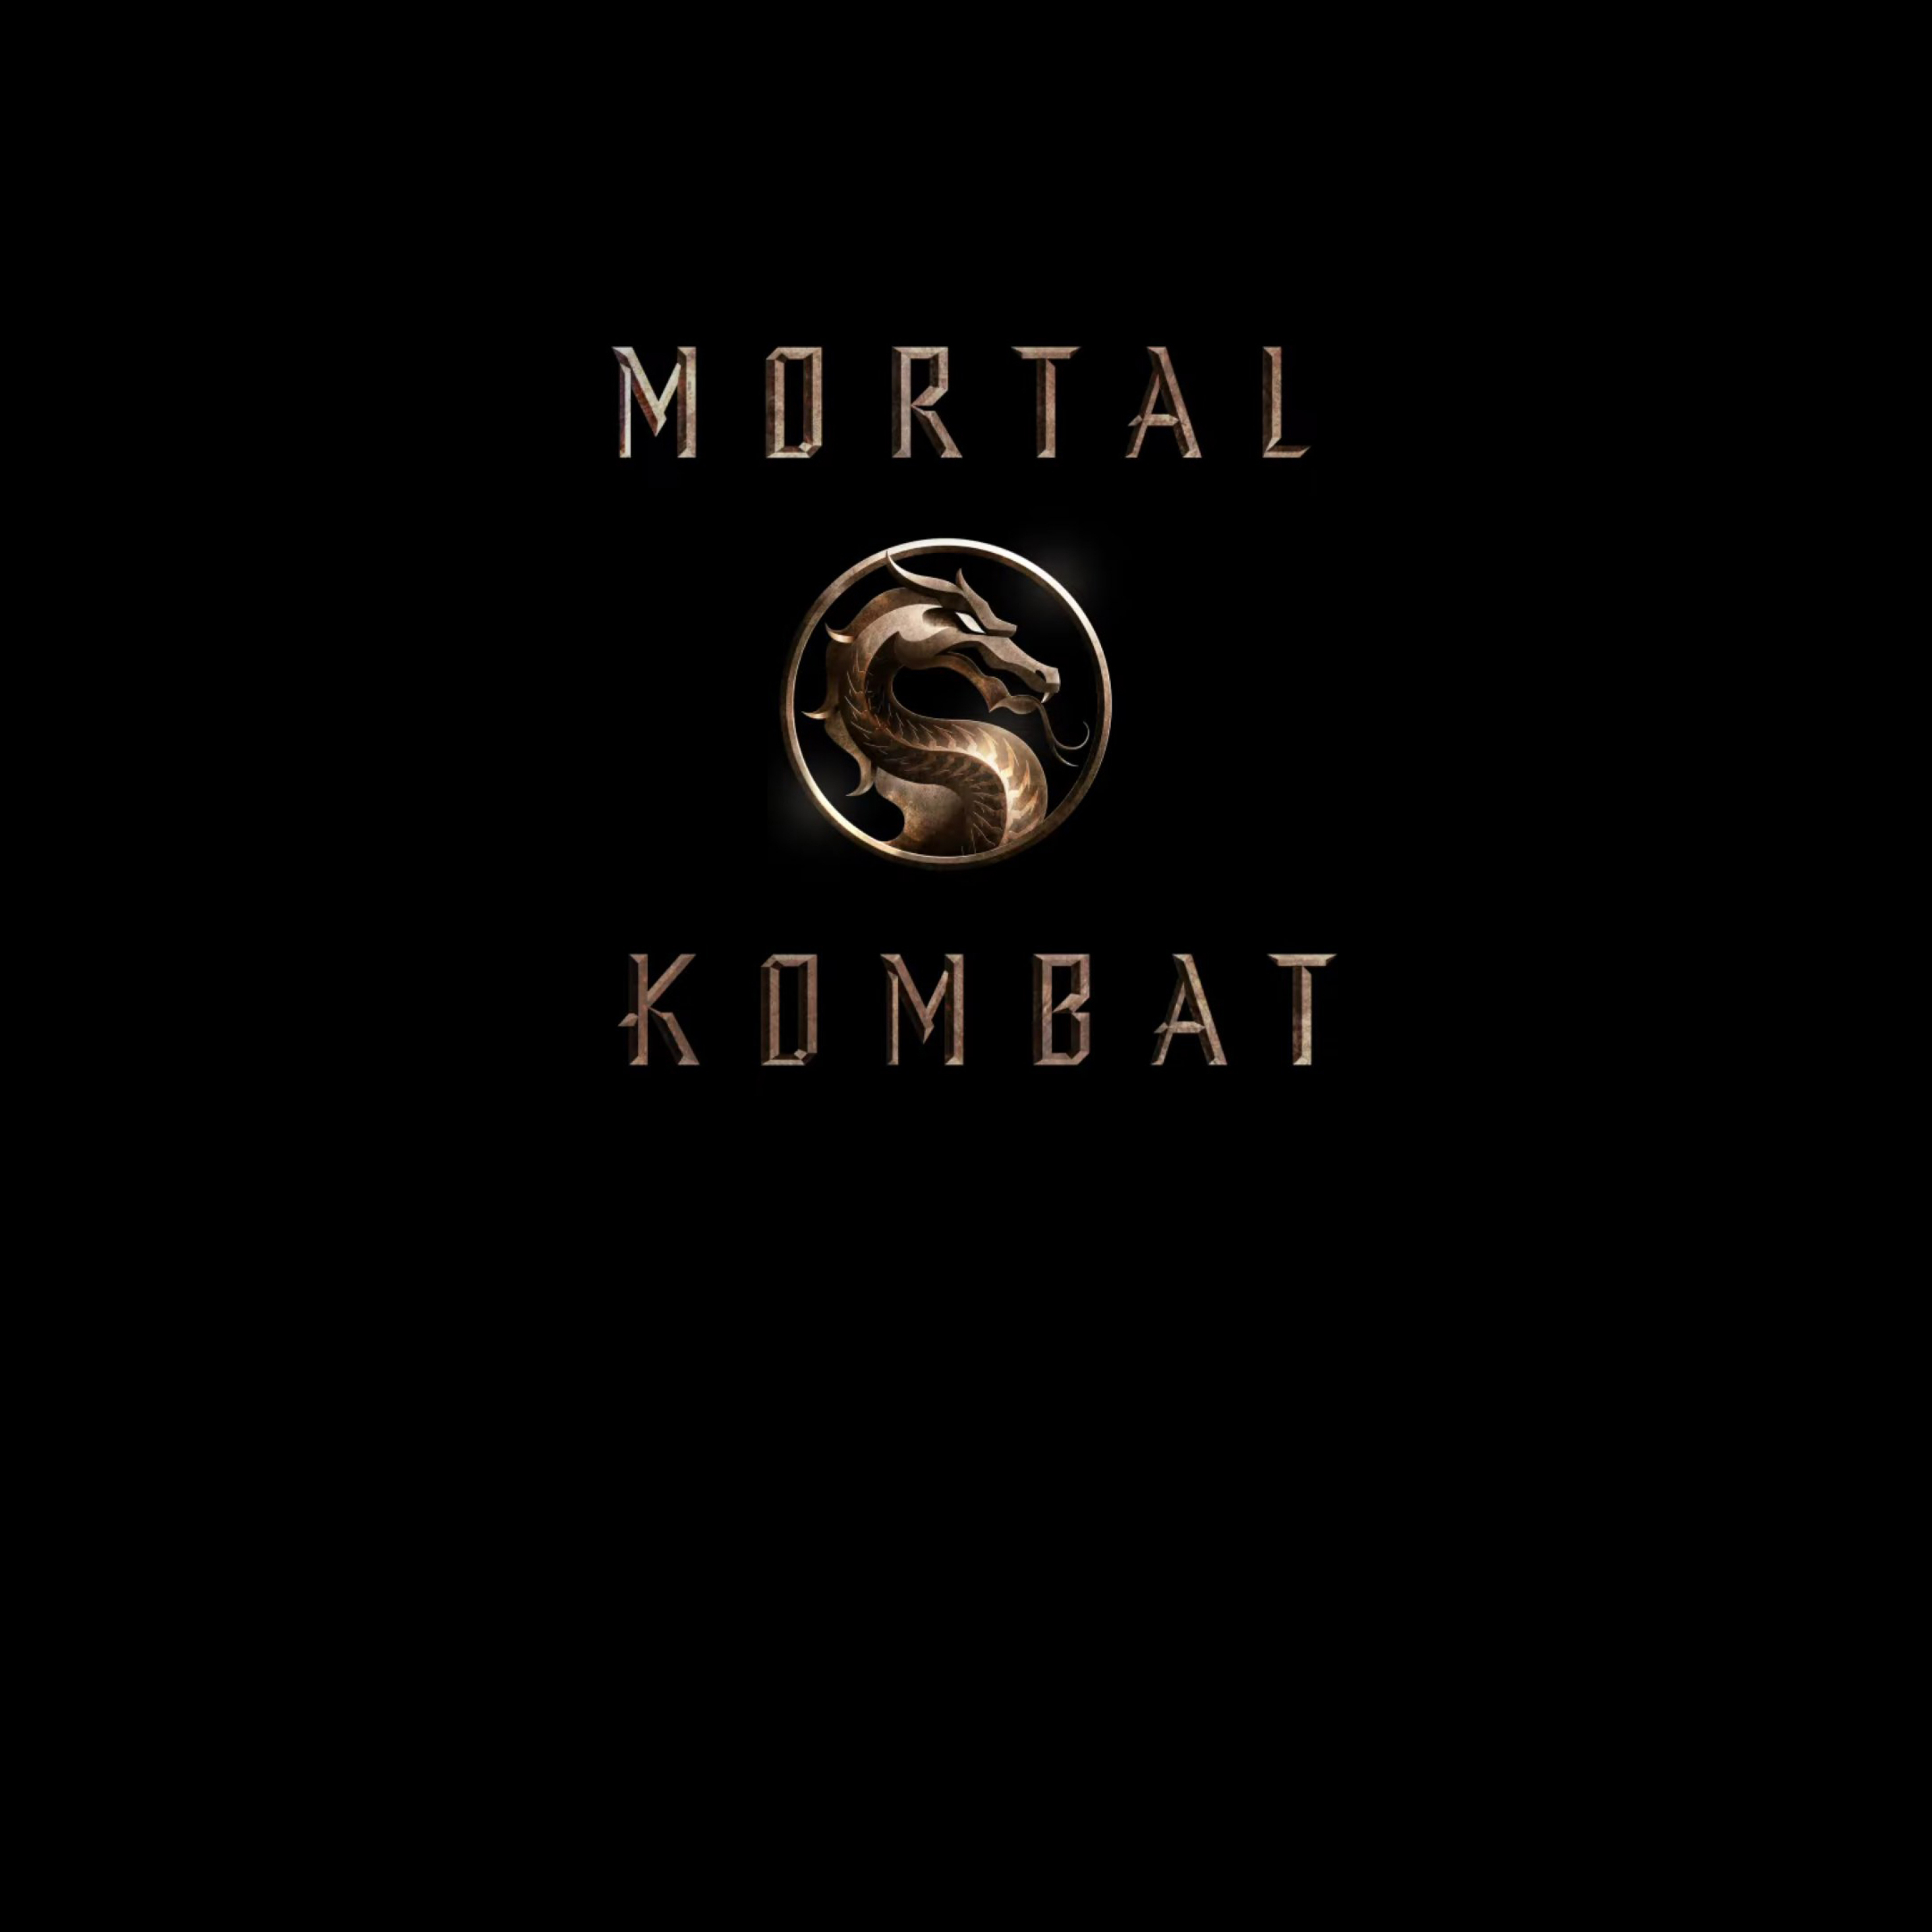 2932x2932 Mortal Kombat Movie Logo Ipad Pro Retina Display Wallpaper